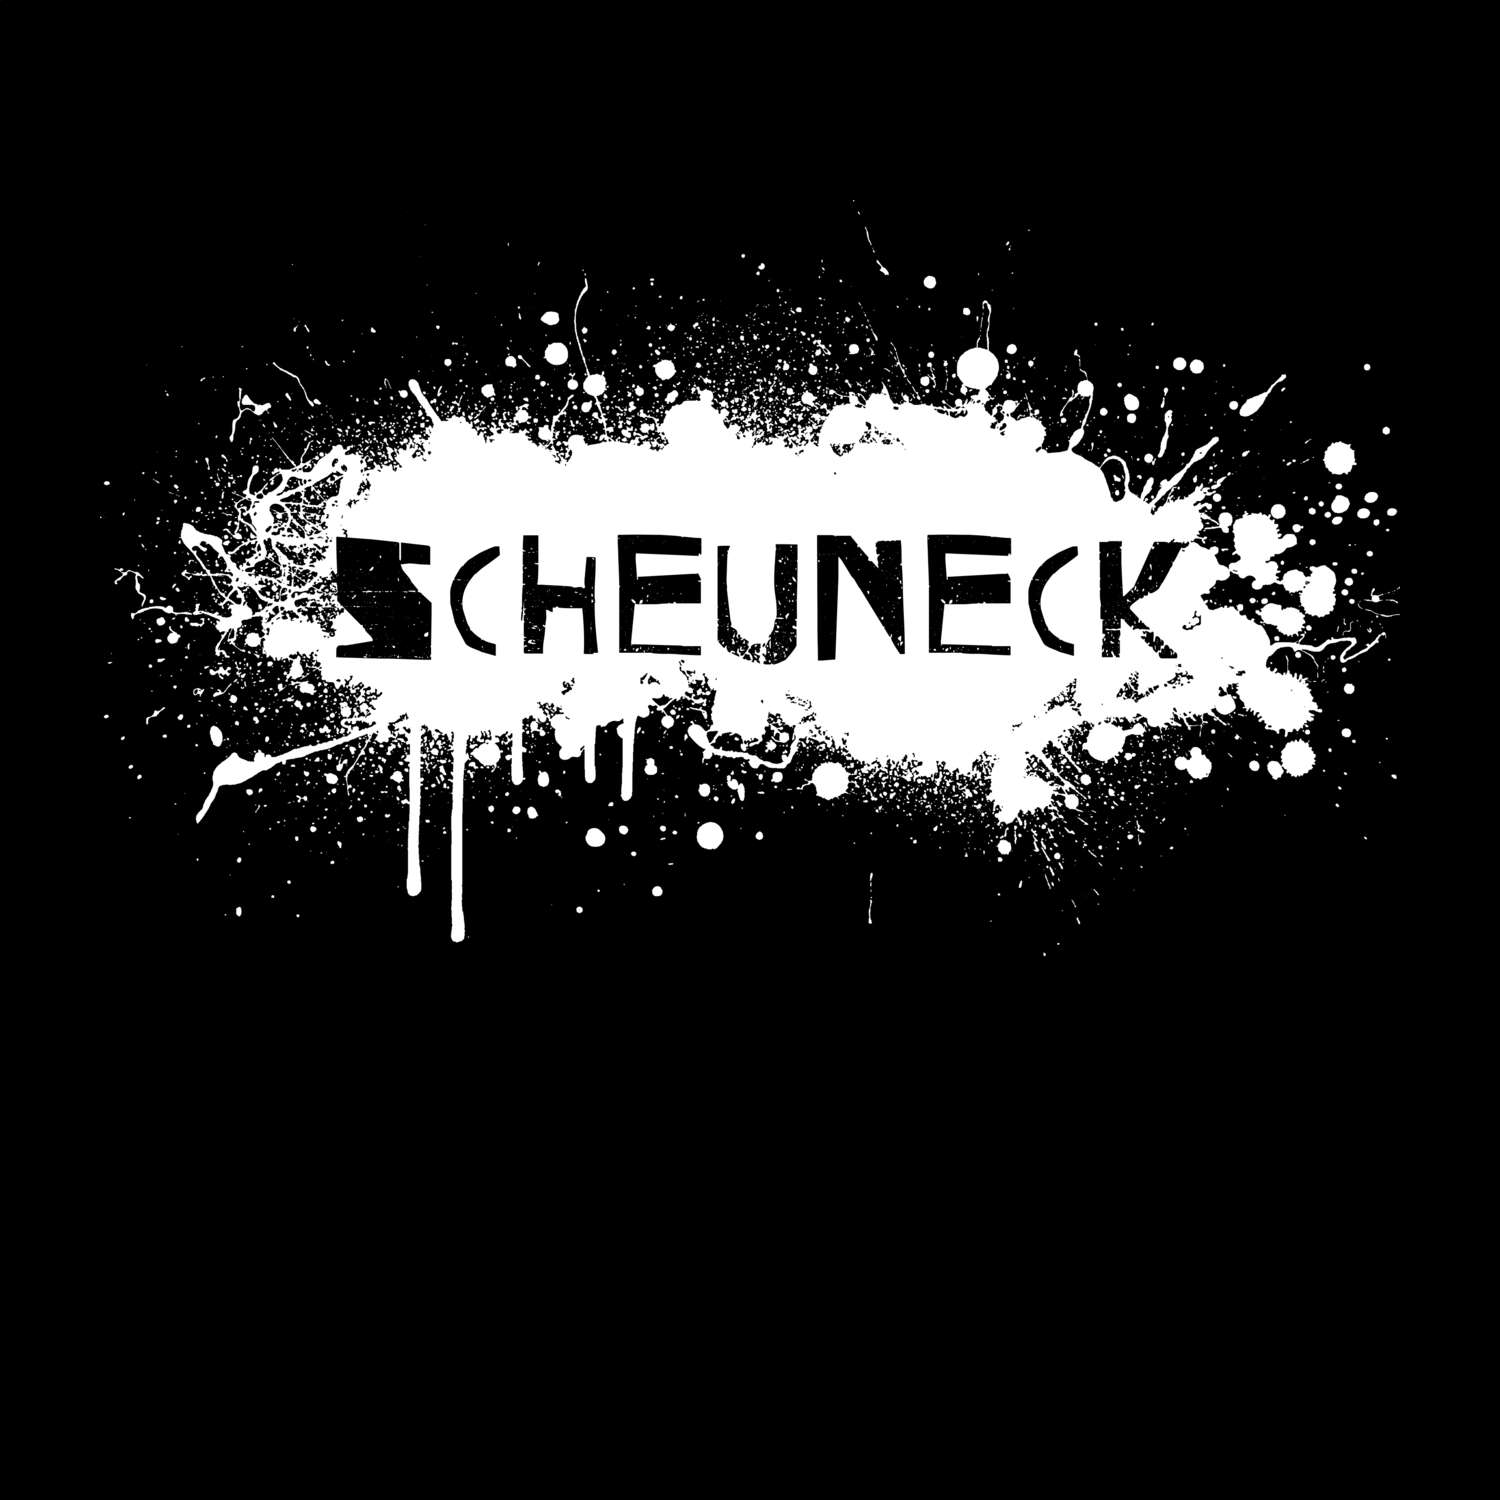 Scheuneck T-Shirt »Paint Splash Punk«